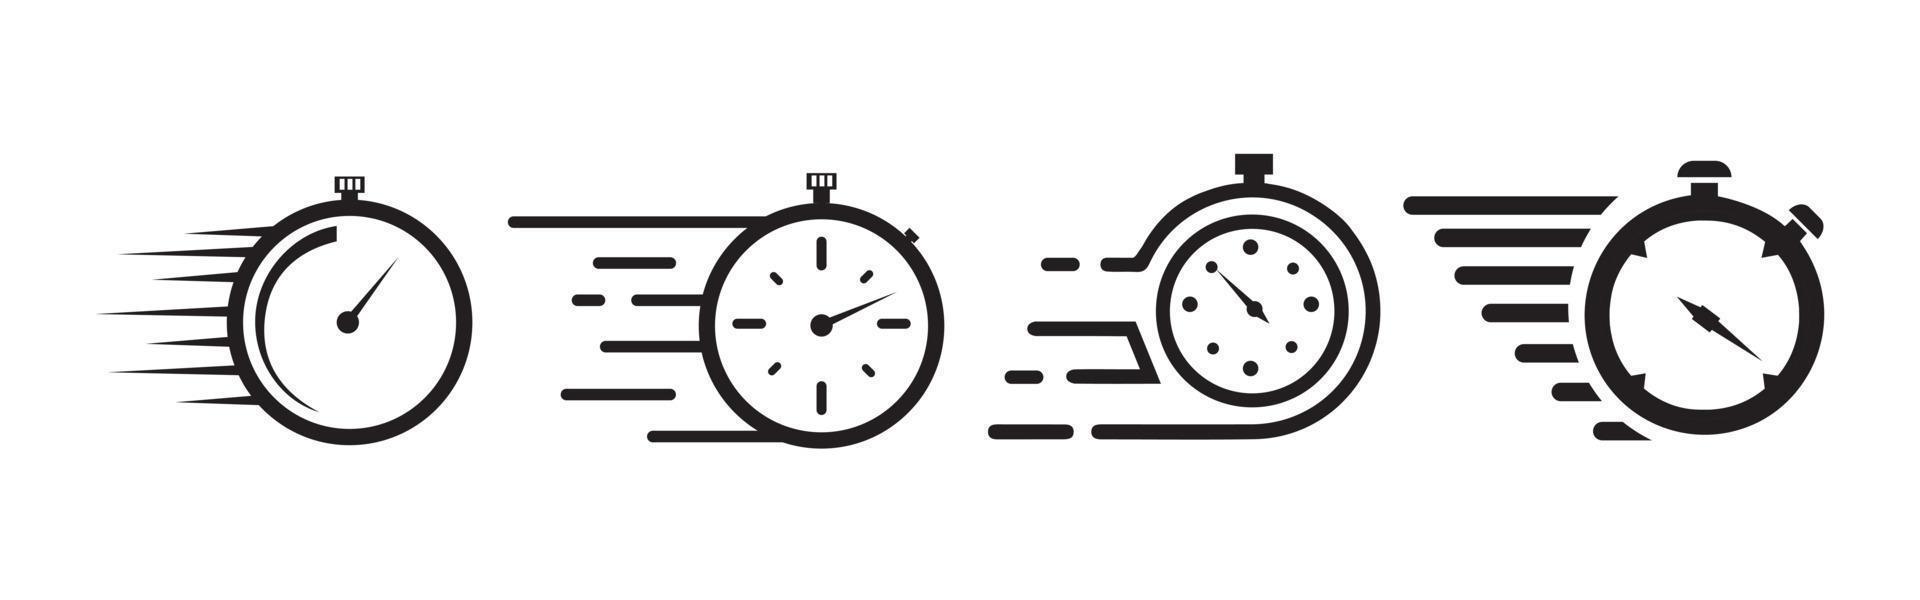 ensemble d'icônes de minuterie. icône de temps rapide ou de date limite. symbole de service express. compte à rebours et icônes de chronomètre isolés sur blanc. vecteur